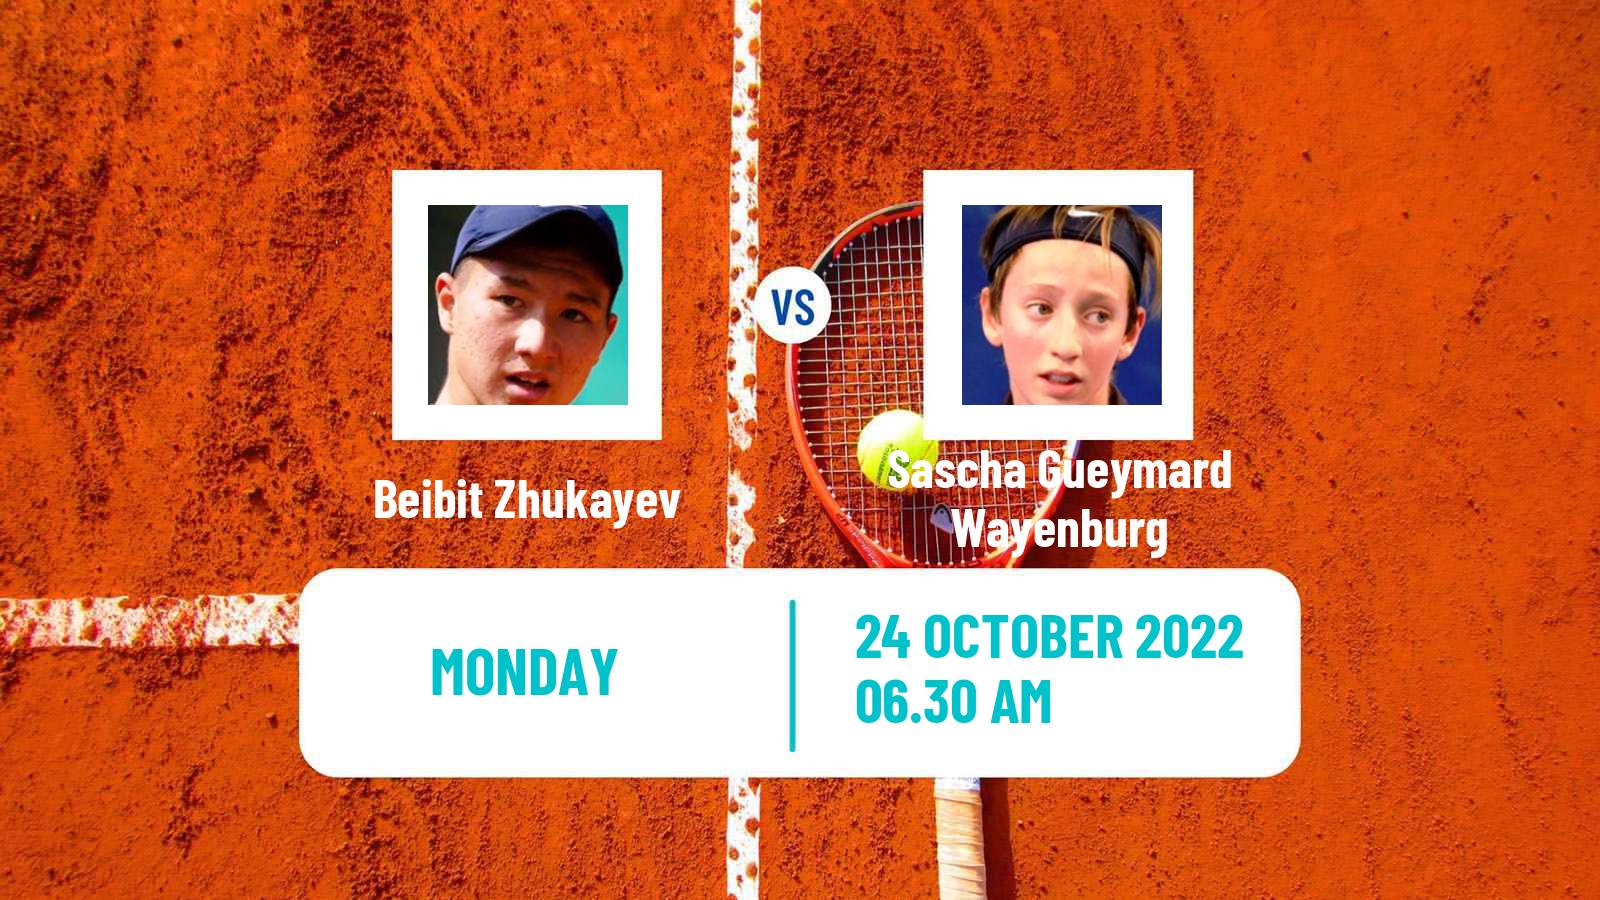 Tennis ATP Challenger Beibit Zhukayev - Sascha Gueymard Wayenburg